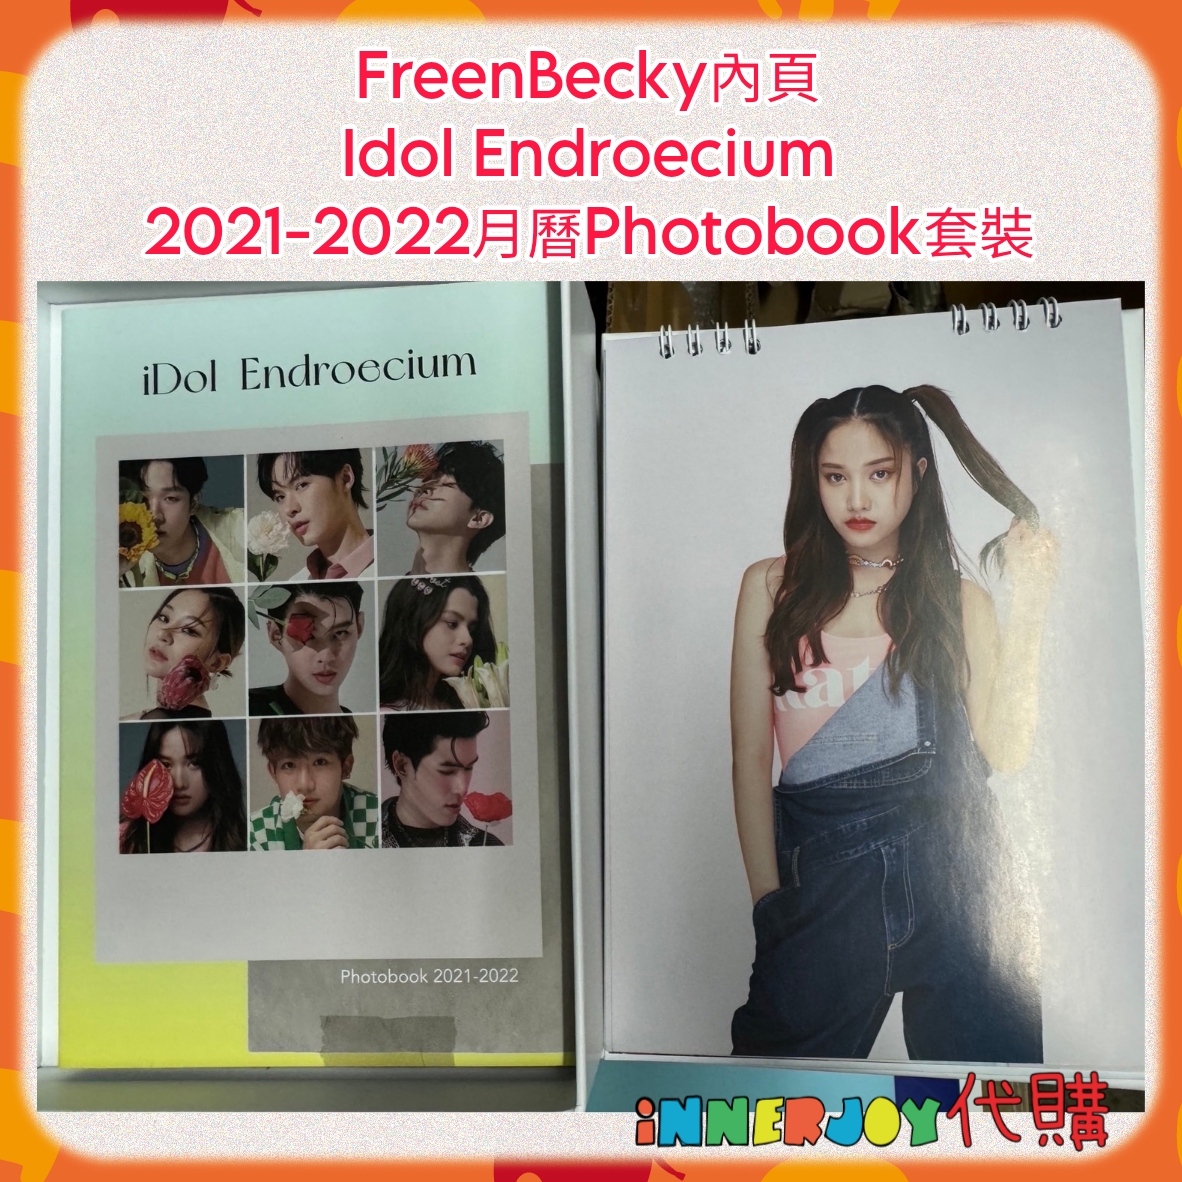 FreenBecky IDF : Photobook 2021-2022-